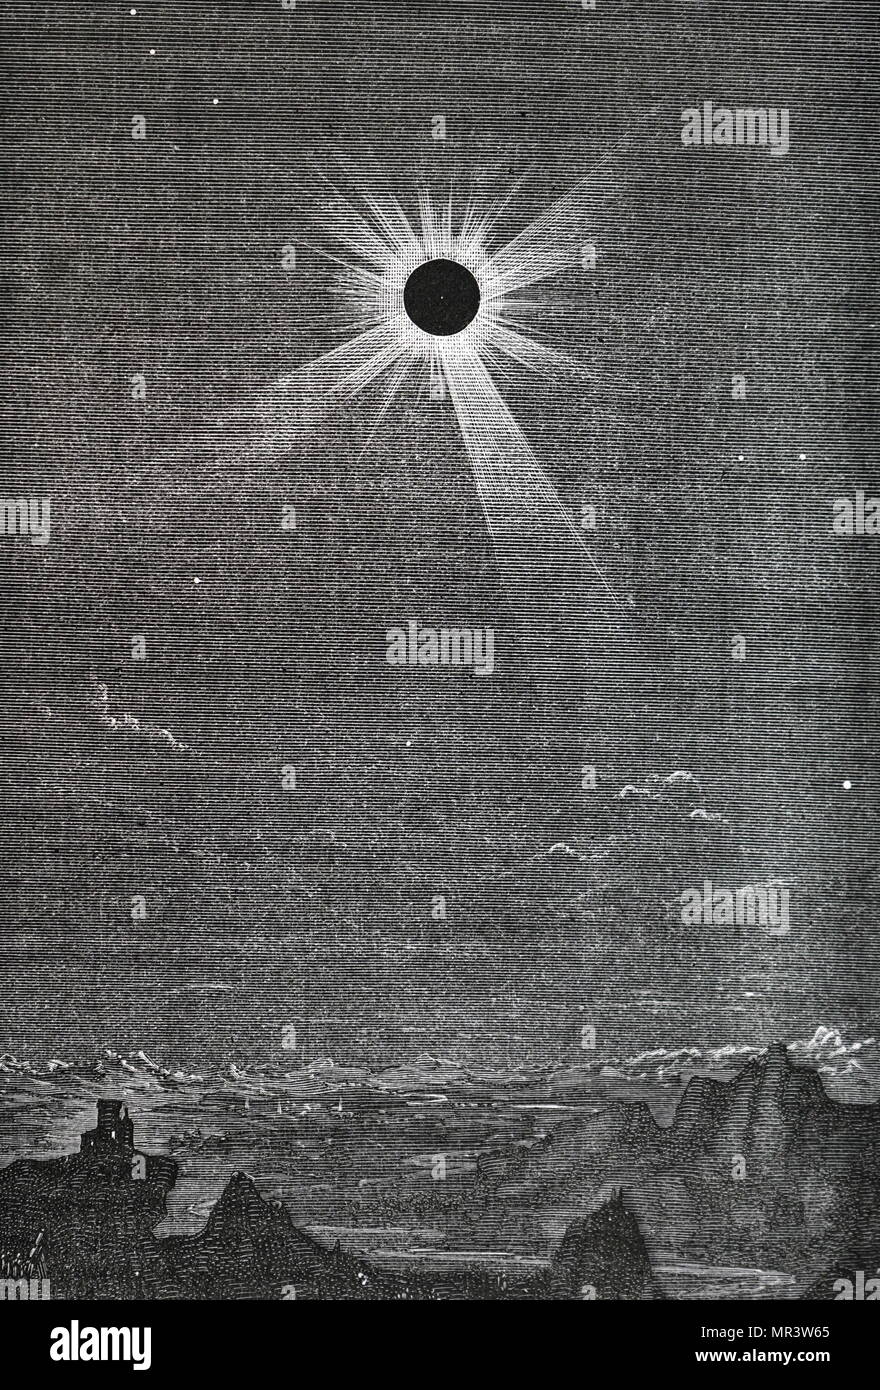 Incisione raffigurante le eclissi solare del 1878 come osservato da montagne rocciose. Datata del XIX secolo Foto Stock